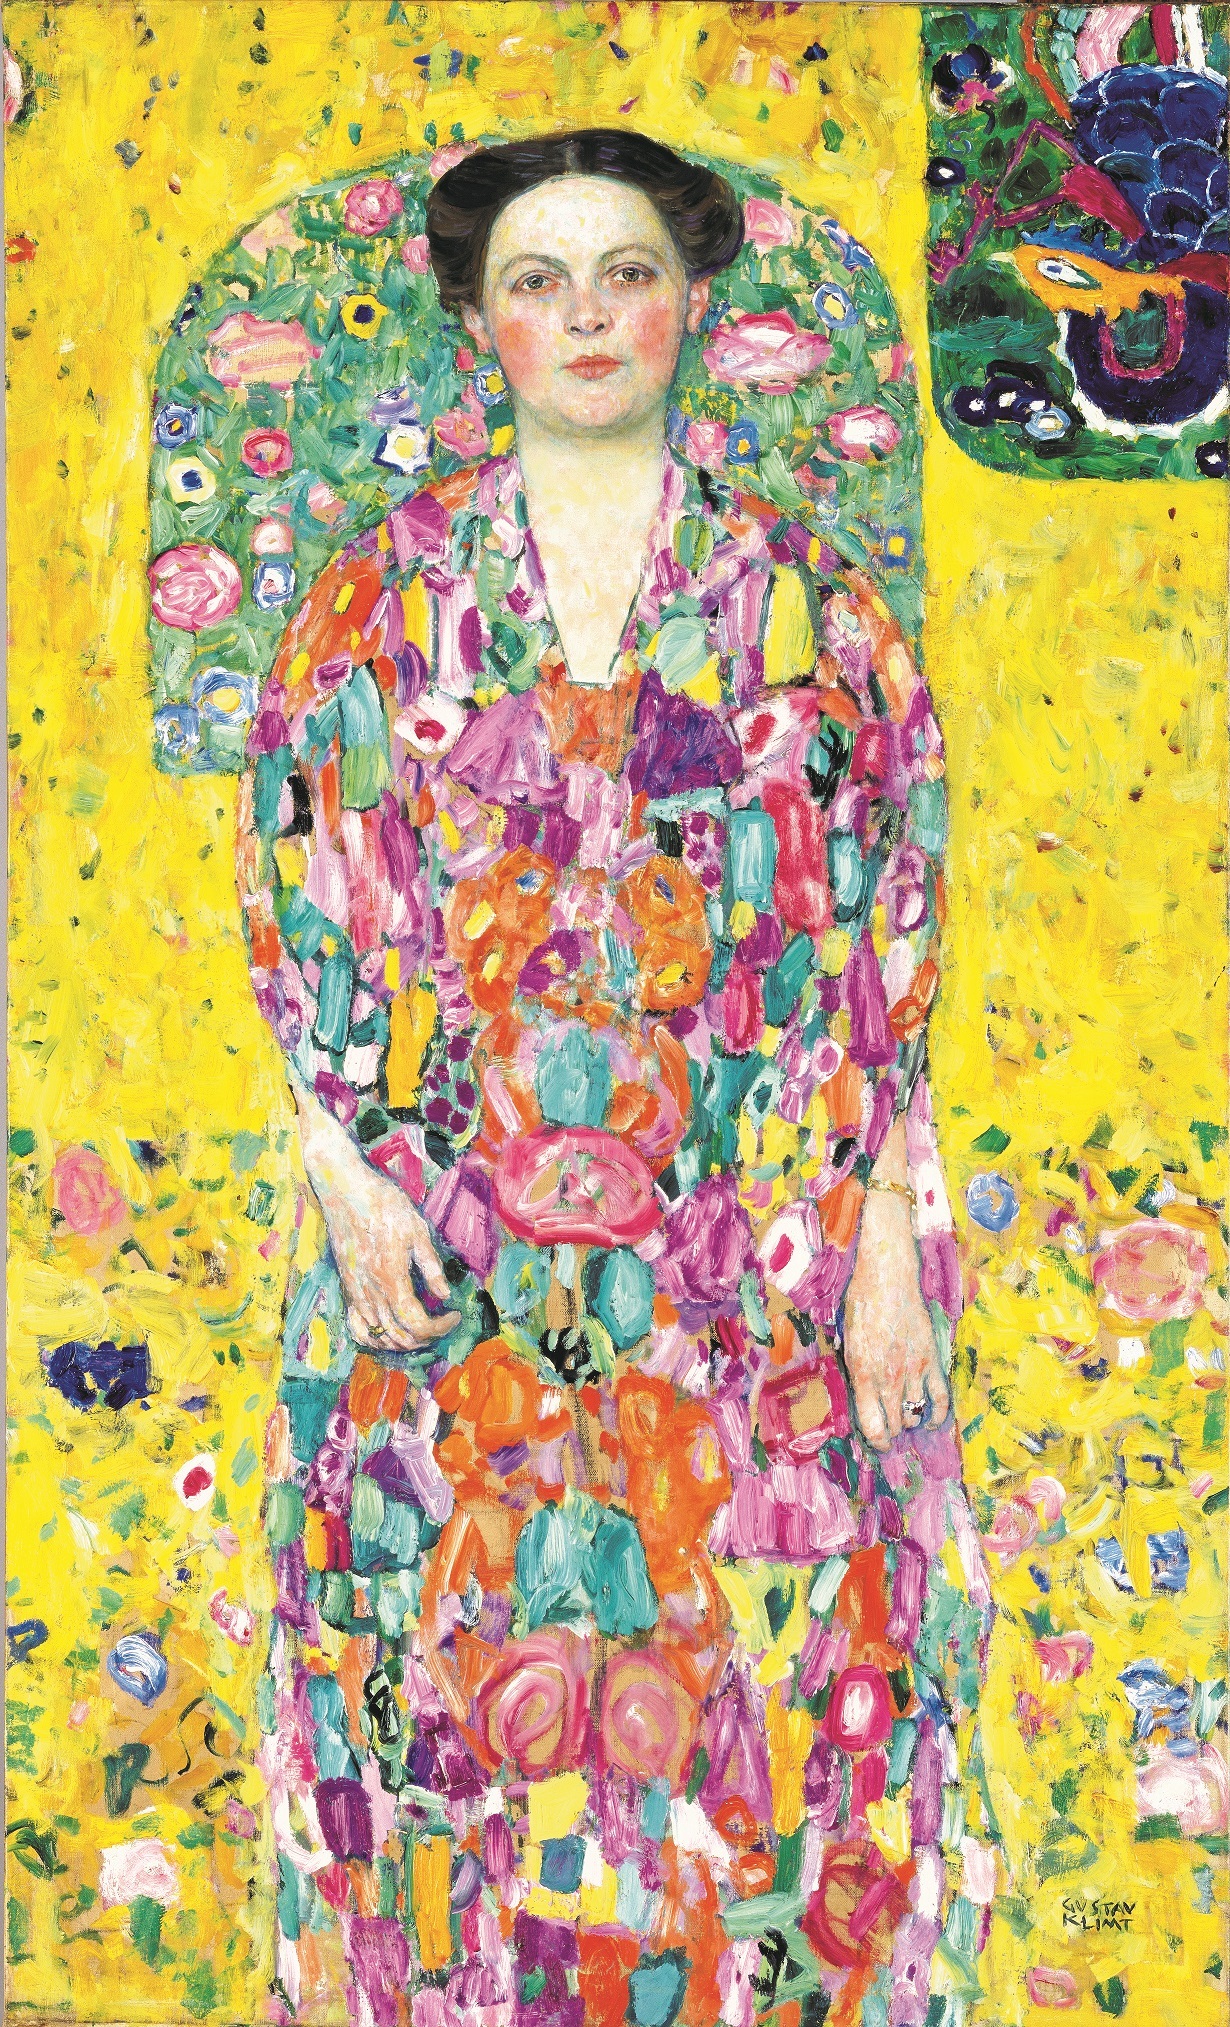 グスタフ・クリムト《オイゲニア・プリマフェージの肖像》 1913/1914年　油彩、カンヴァス　140 x 85 cm　豊田市美術館